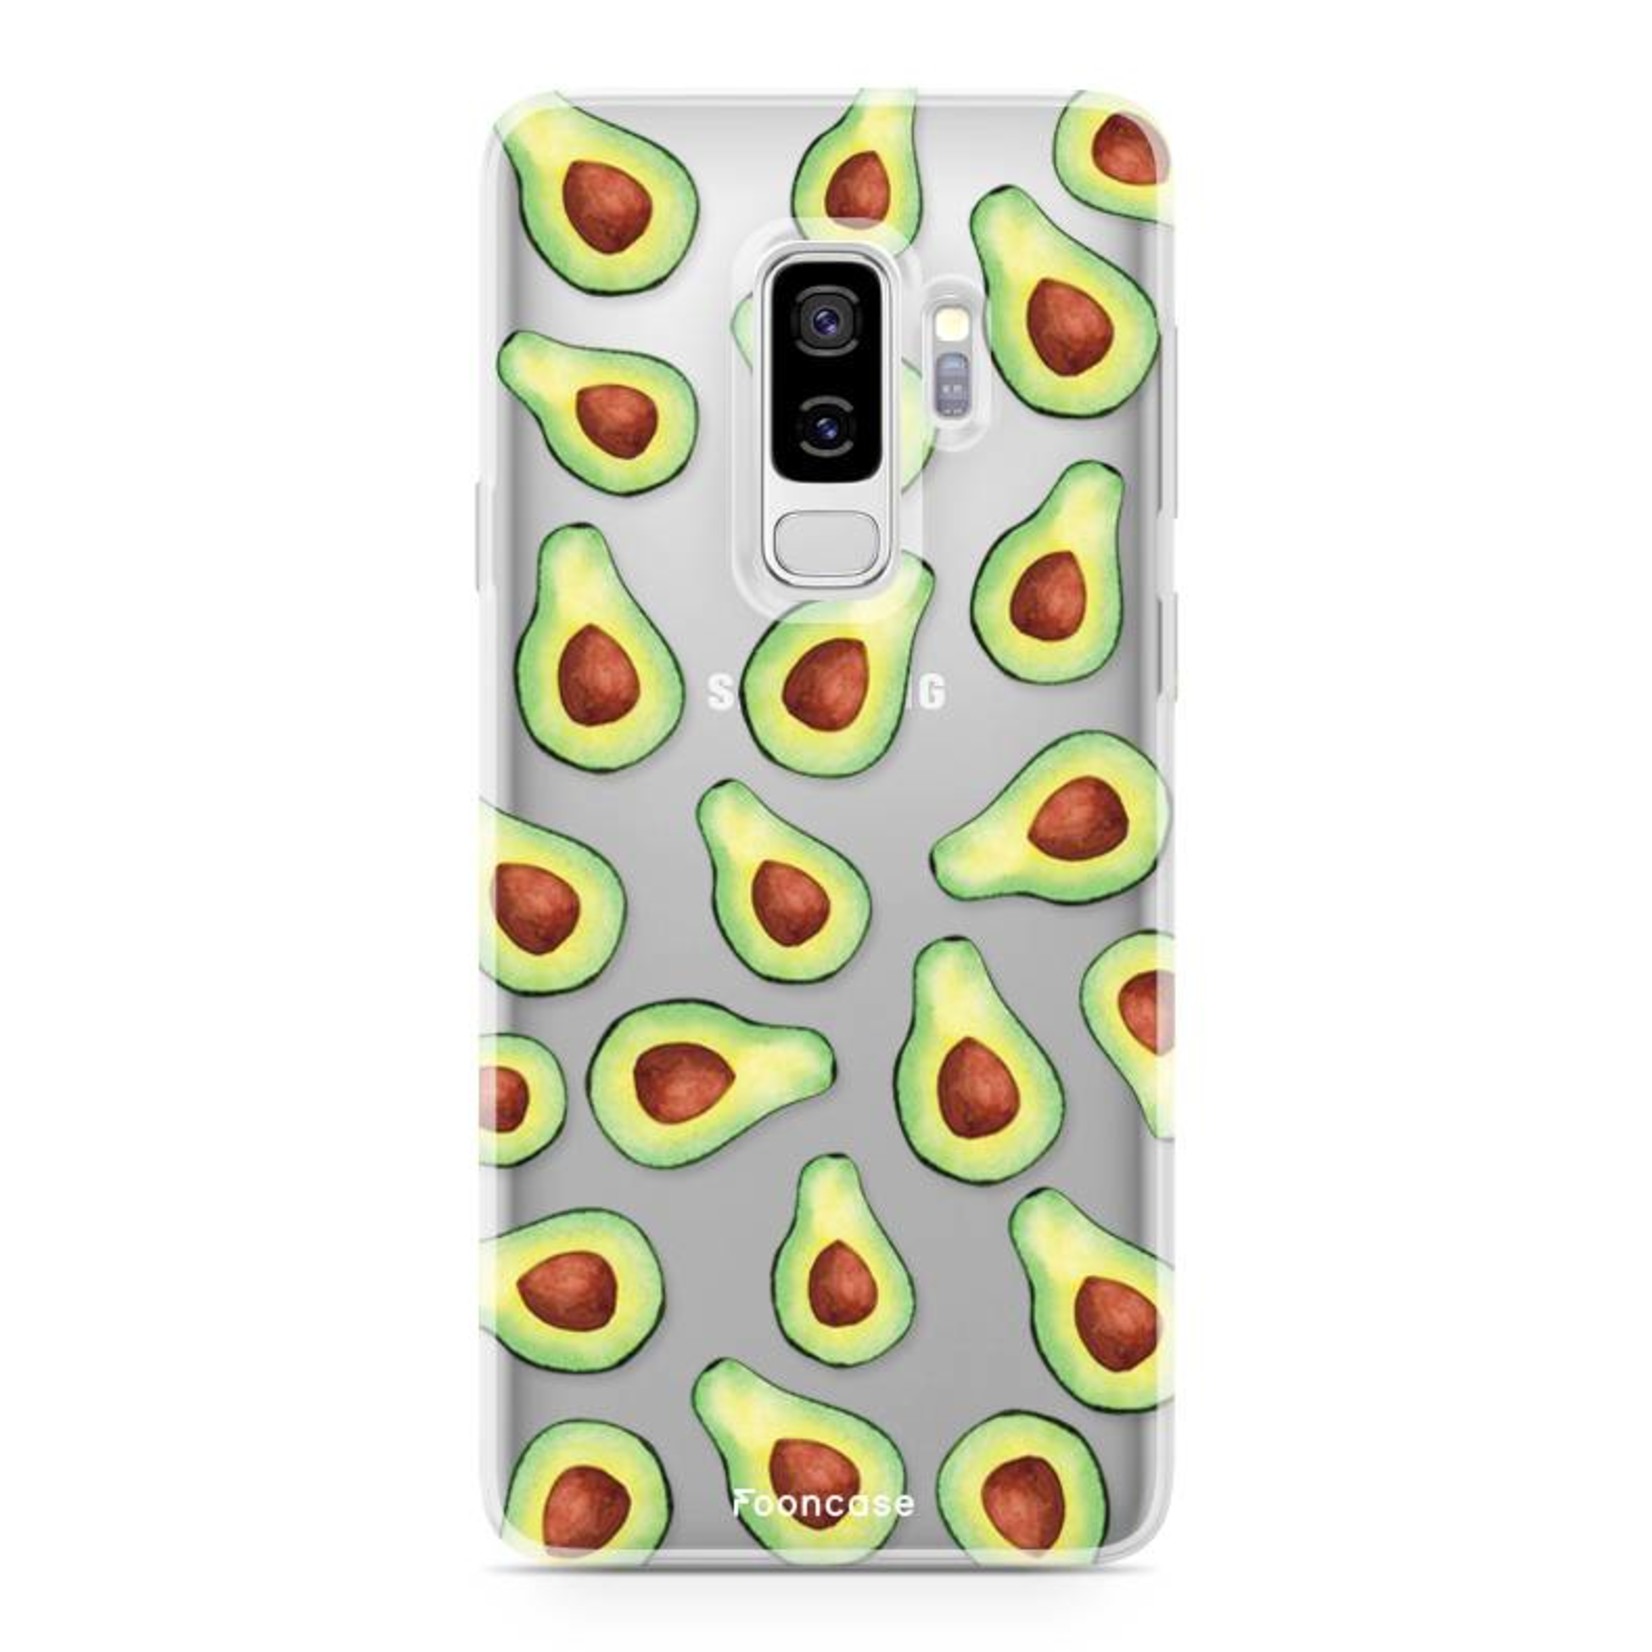 FOONCASE Samsung Galaxy S9 Plus Case - Avocado